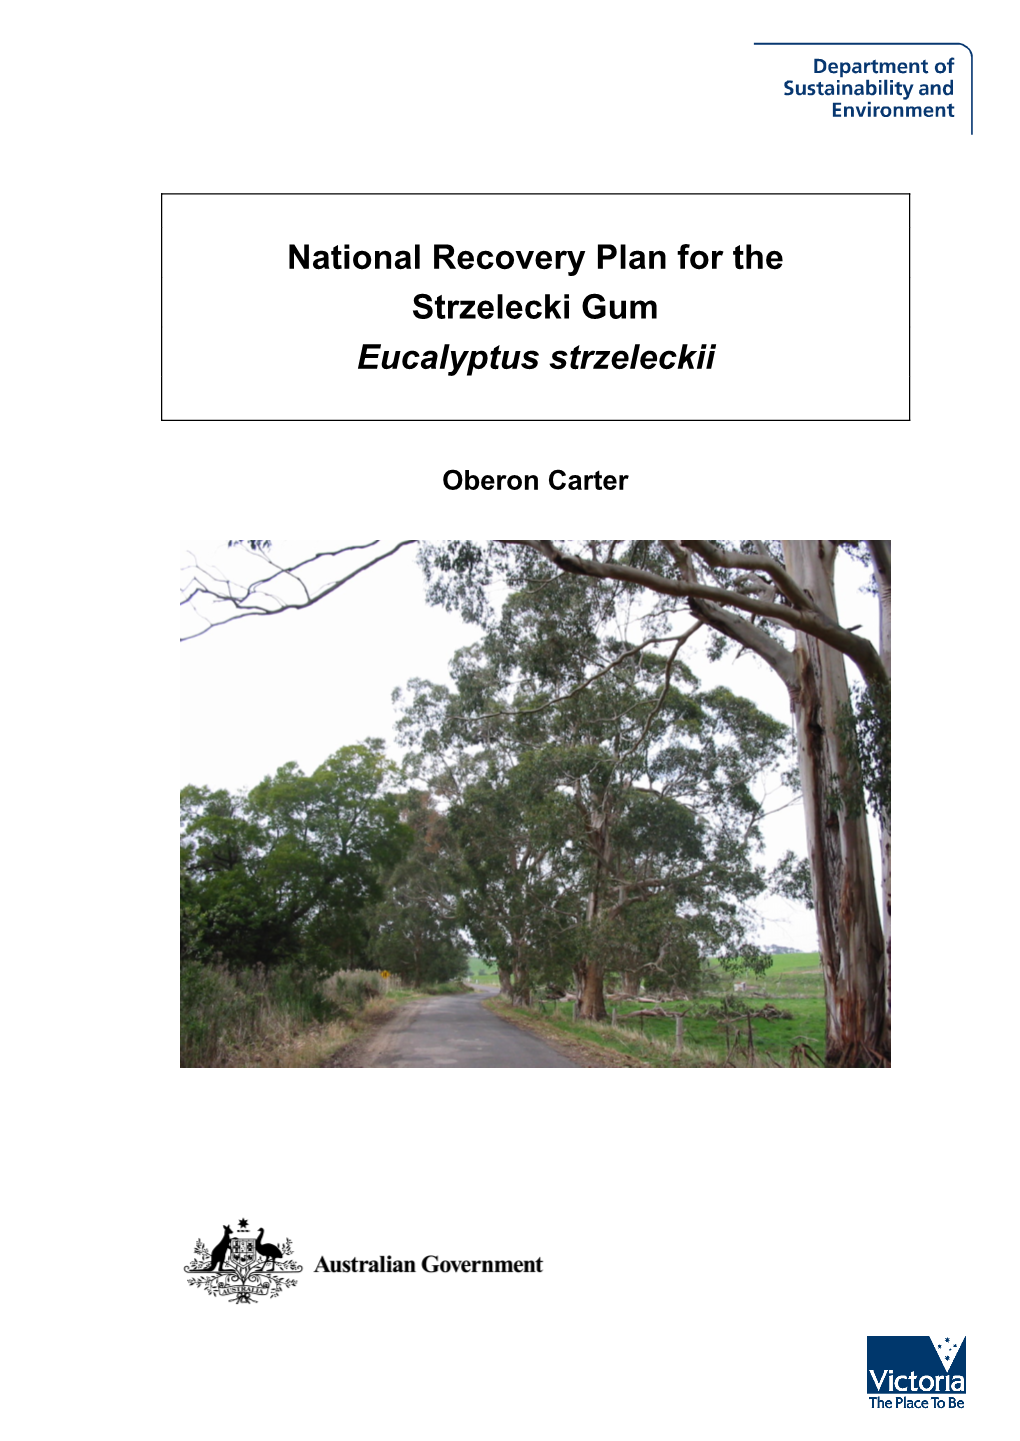 National Recovery Plan for the Strzelecki Gum Eucalyptus Strzeleckii